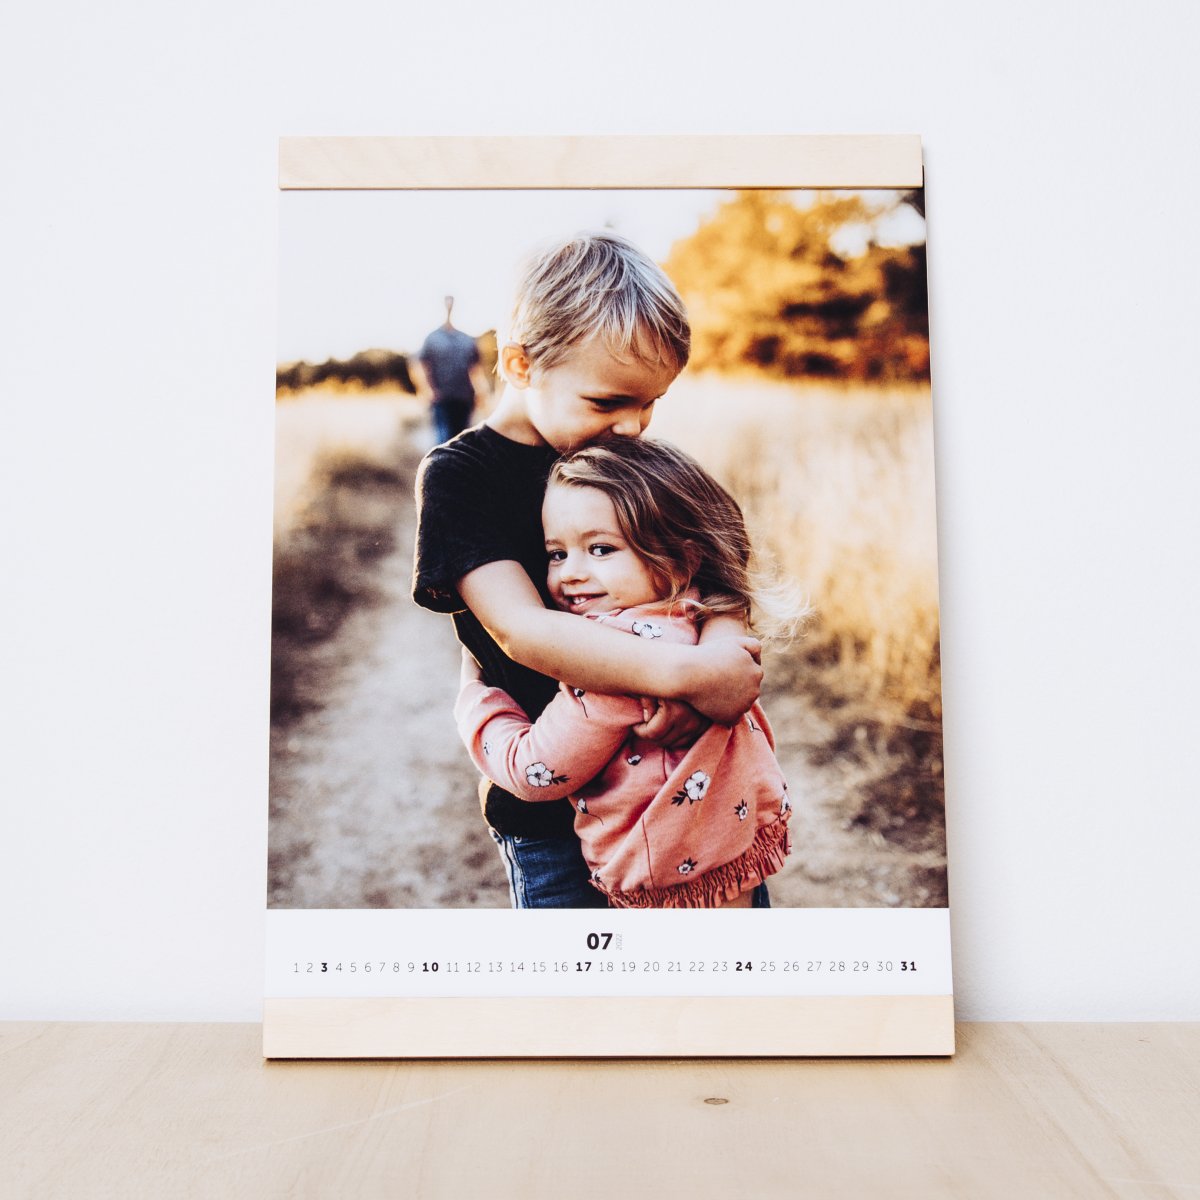 Kalendář s fotkami vnoučat jako dárek pro prarodiče.